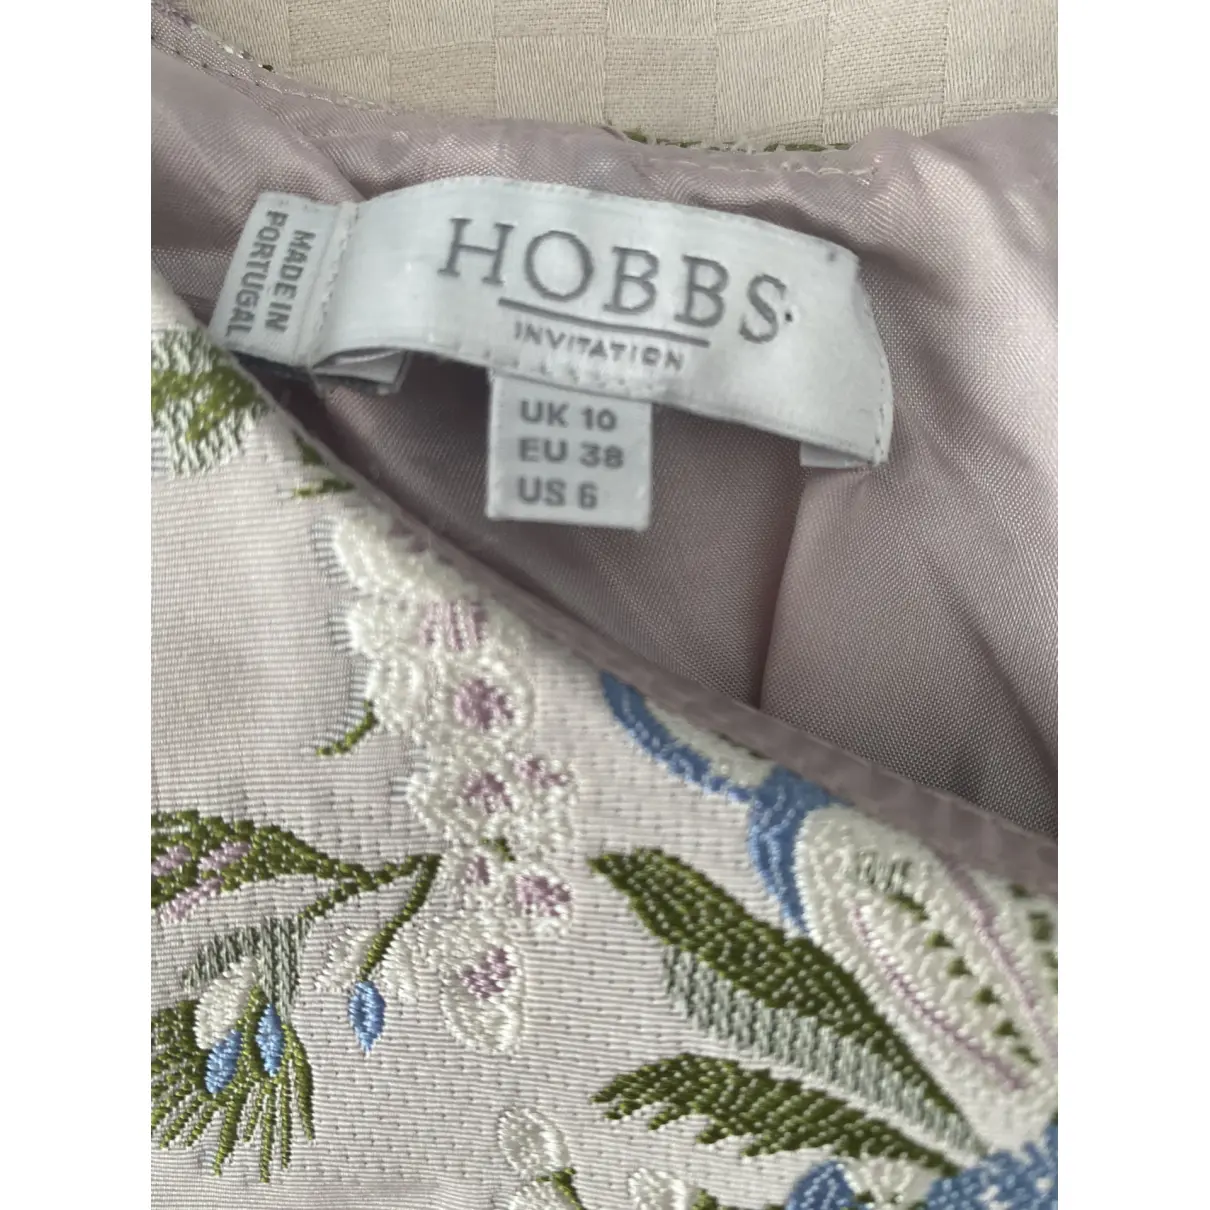 Buy Hobbs Blouse online